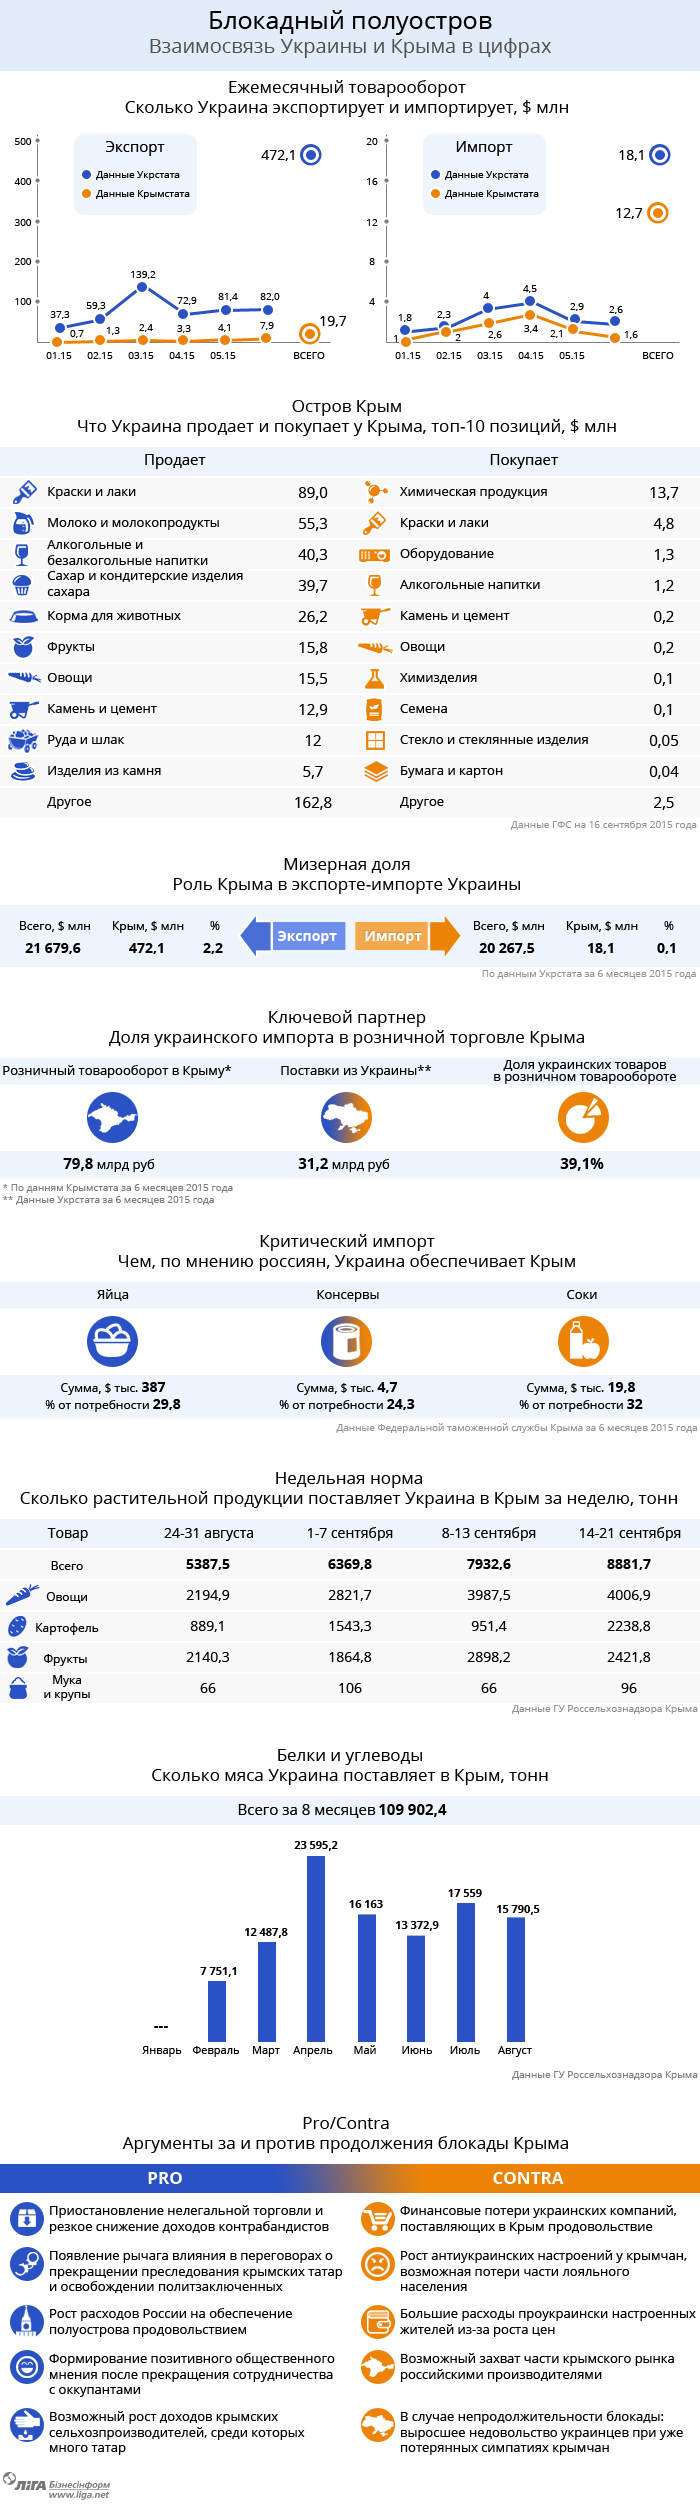 Економічні відносини з окупованим Кримом у цифрах